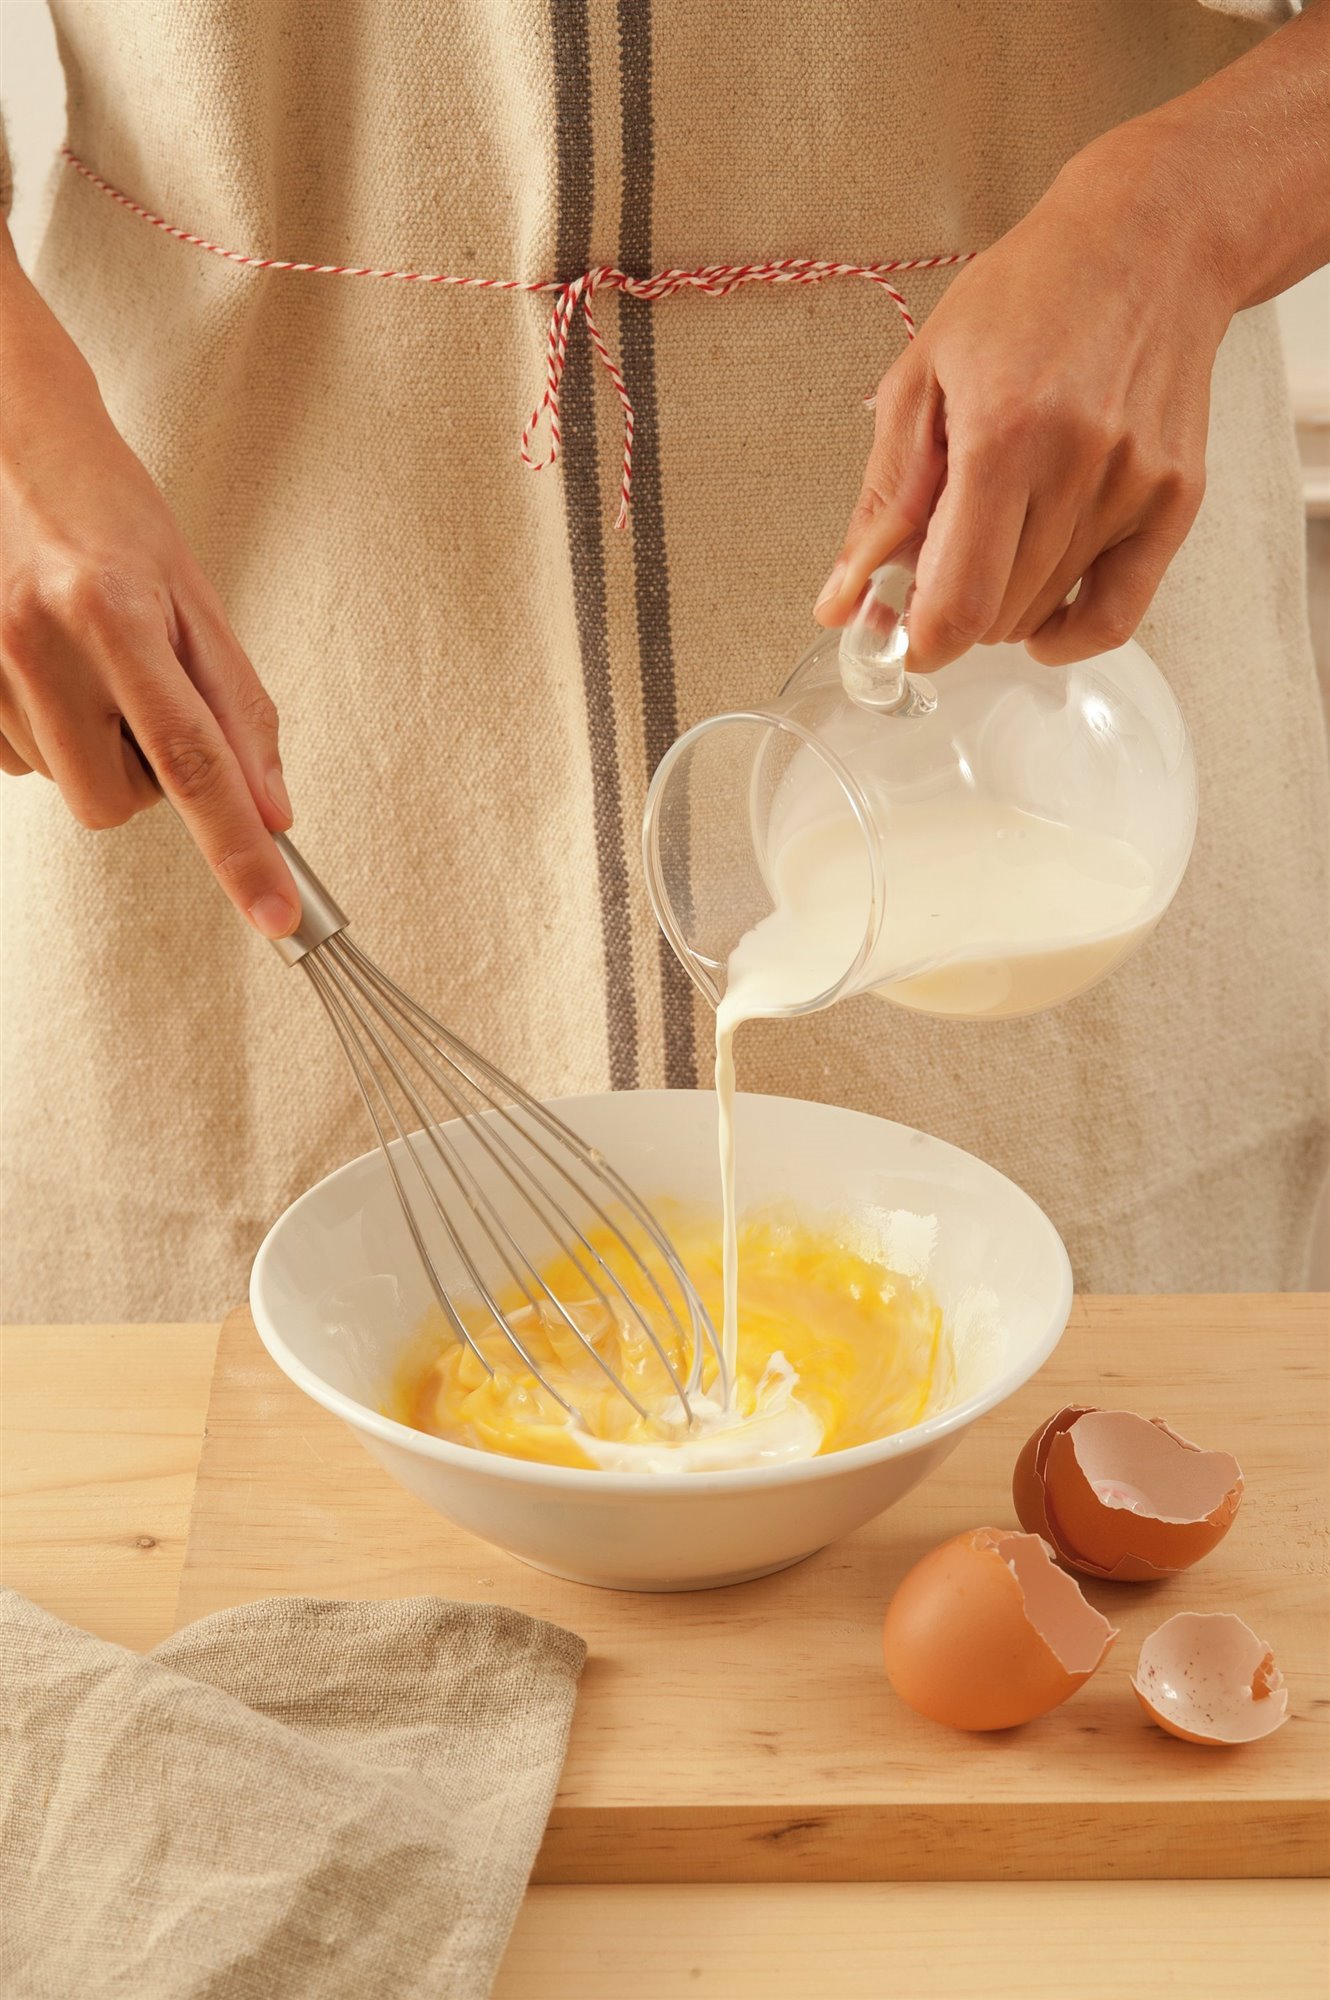 4. Bate los huevos y la nata